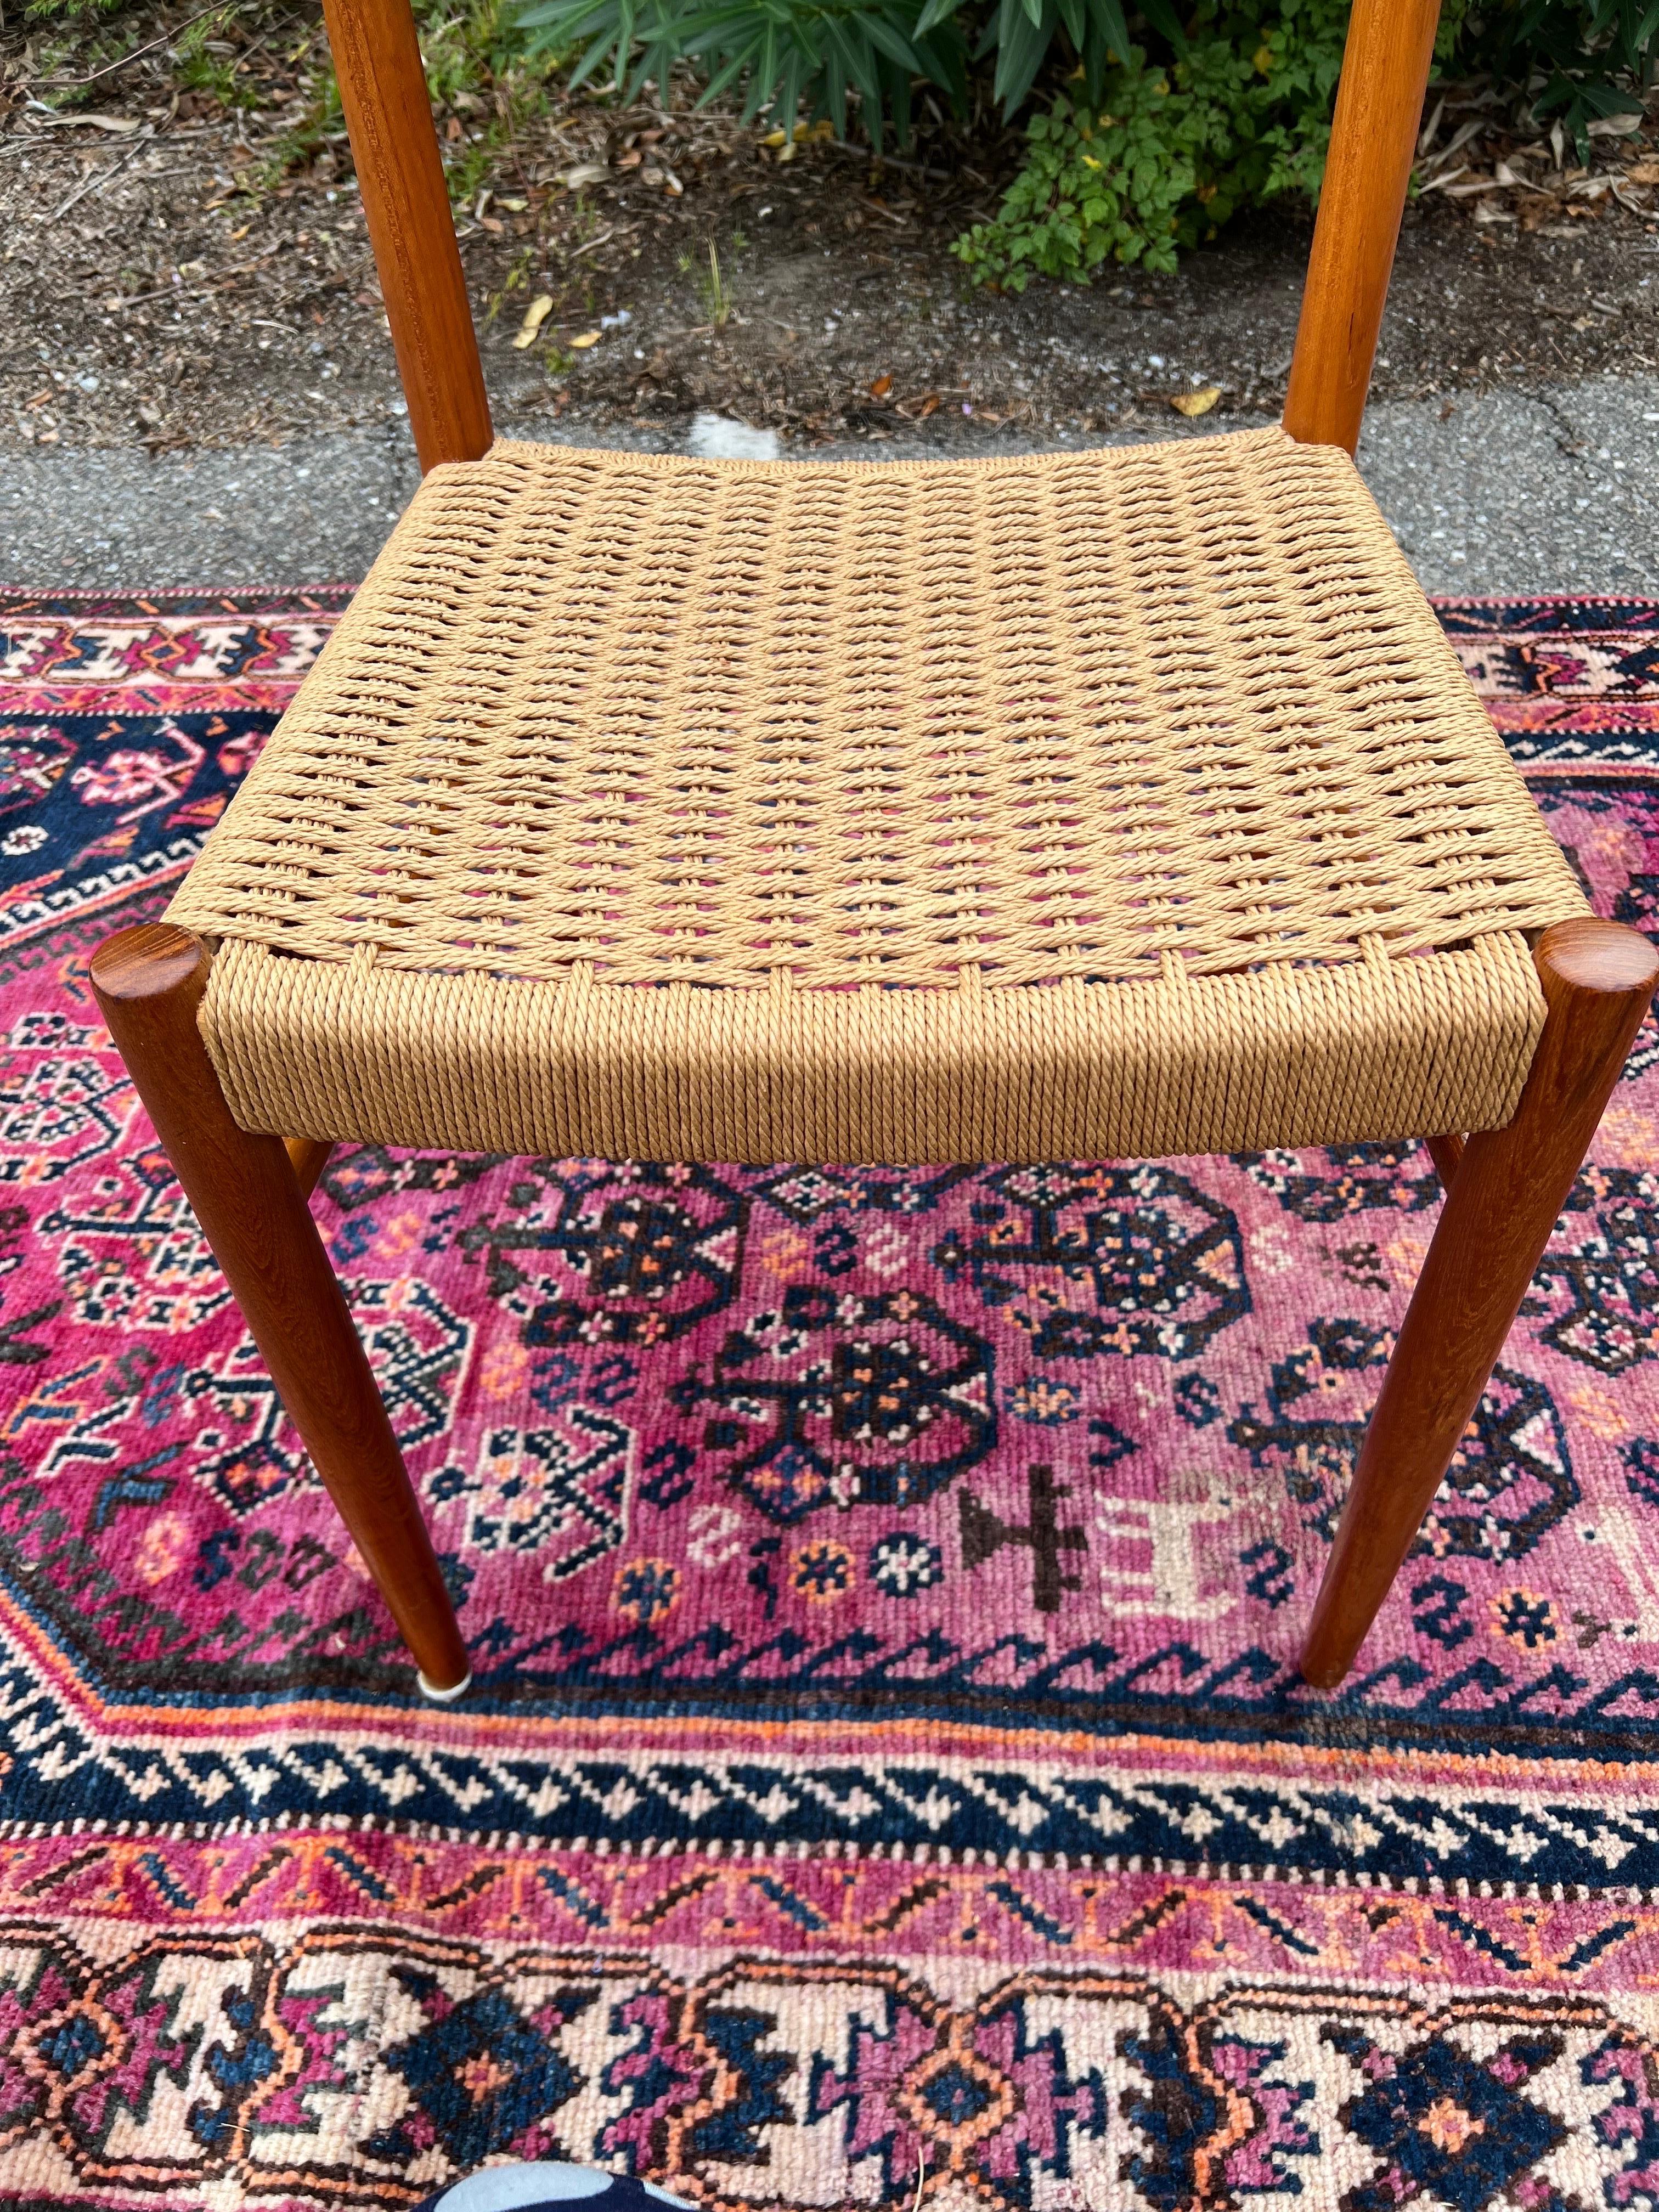 Chaises danoises en corde de papier par AM Mobler, numéro de design 501, en teck avec des chevilles en bois de rose attachant les dossiers aux pieds arrière. La chaise est en très bon état. Parfait pour le look actuel de la décoration intérieure. 